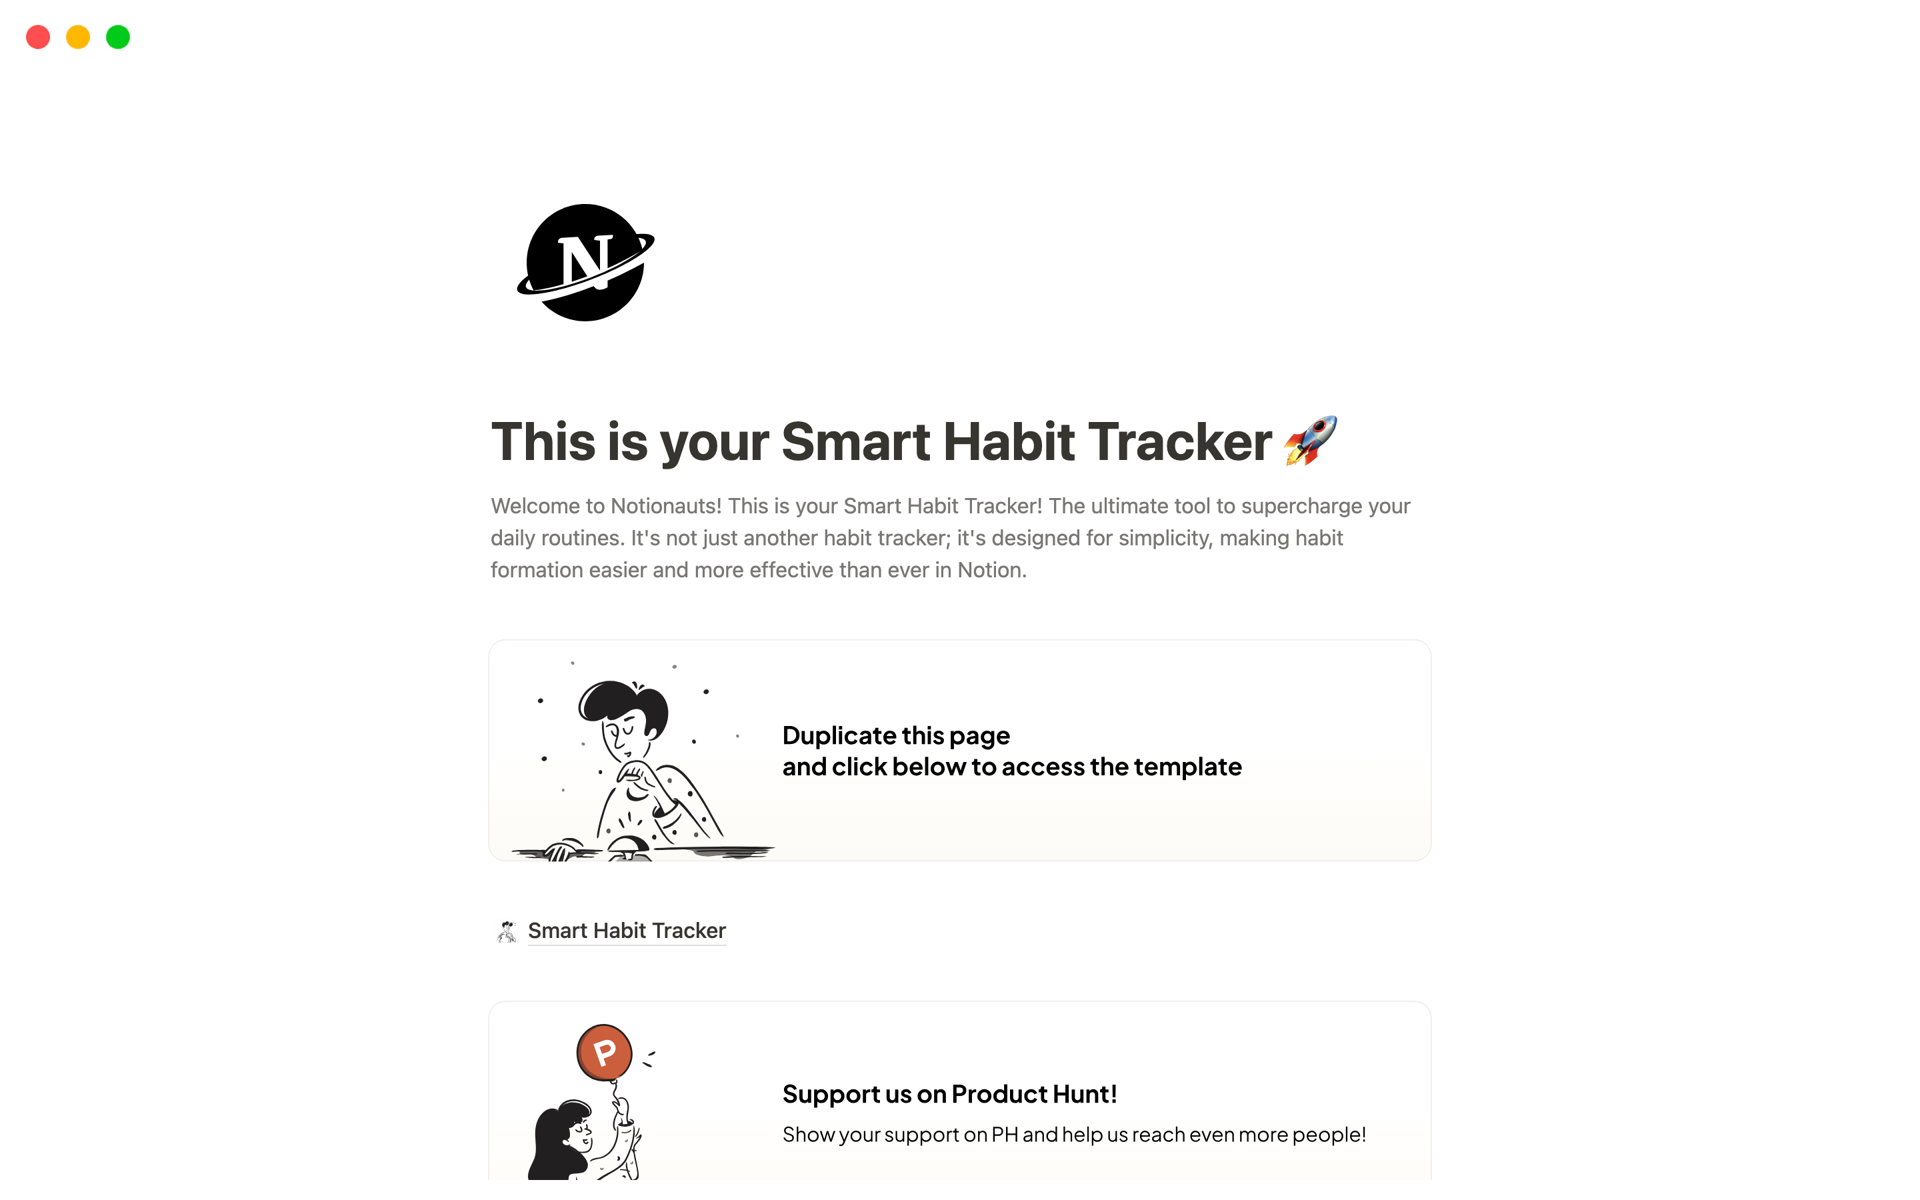 Smart Habit Tracker님의 템플릿 미리보기